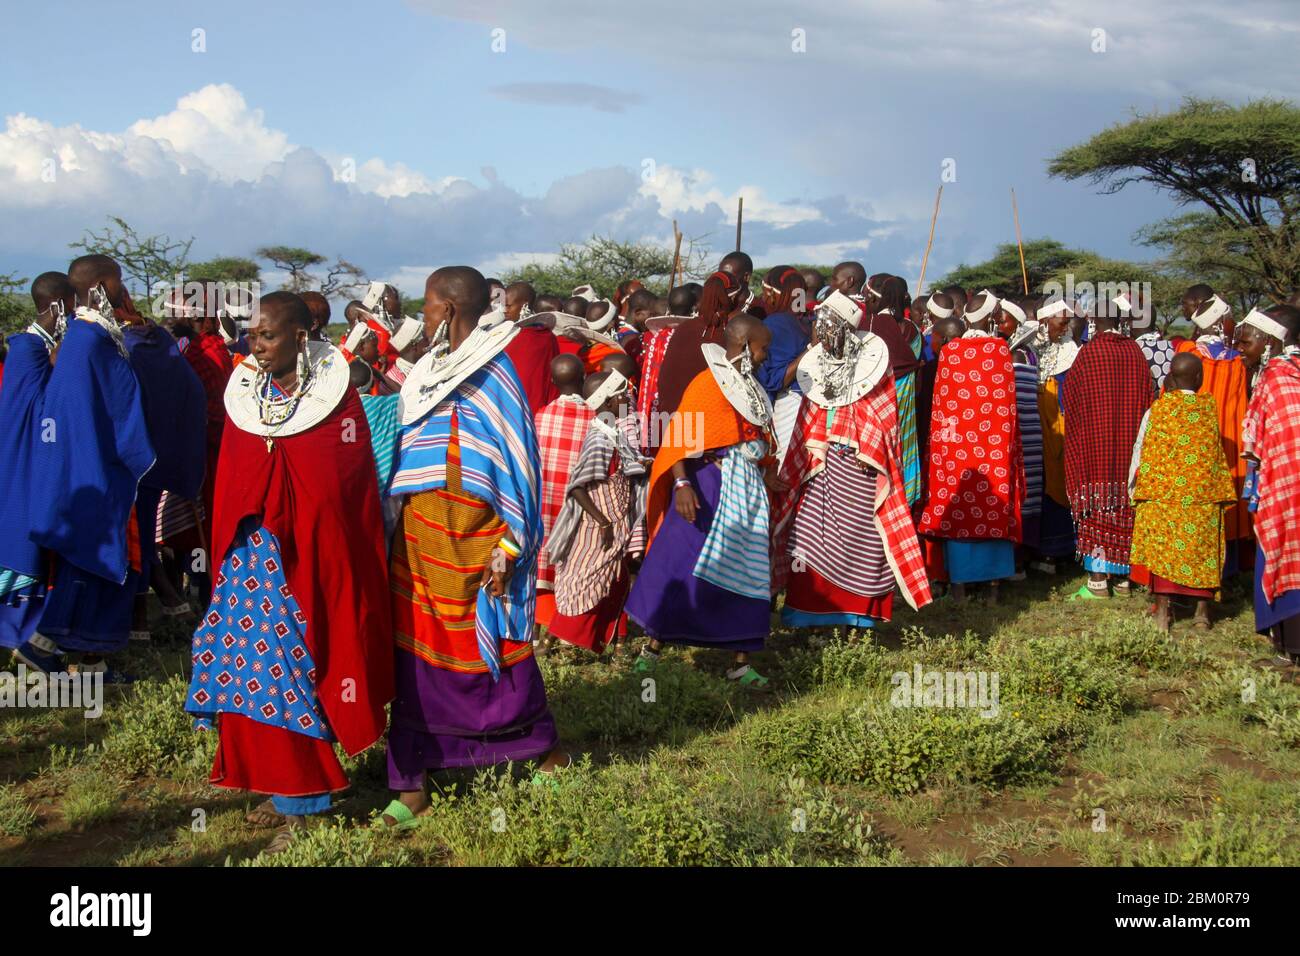 Les femmes de Maasai, avec leurs bijoux Maasai, portent une tenue de fête traditionnelle. Maasai est un groupe ethnique de personnes semi-nomades photographiées en Tanzanie Banque D'Images